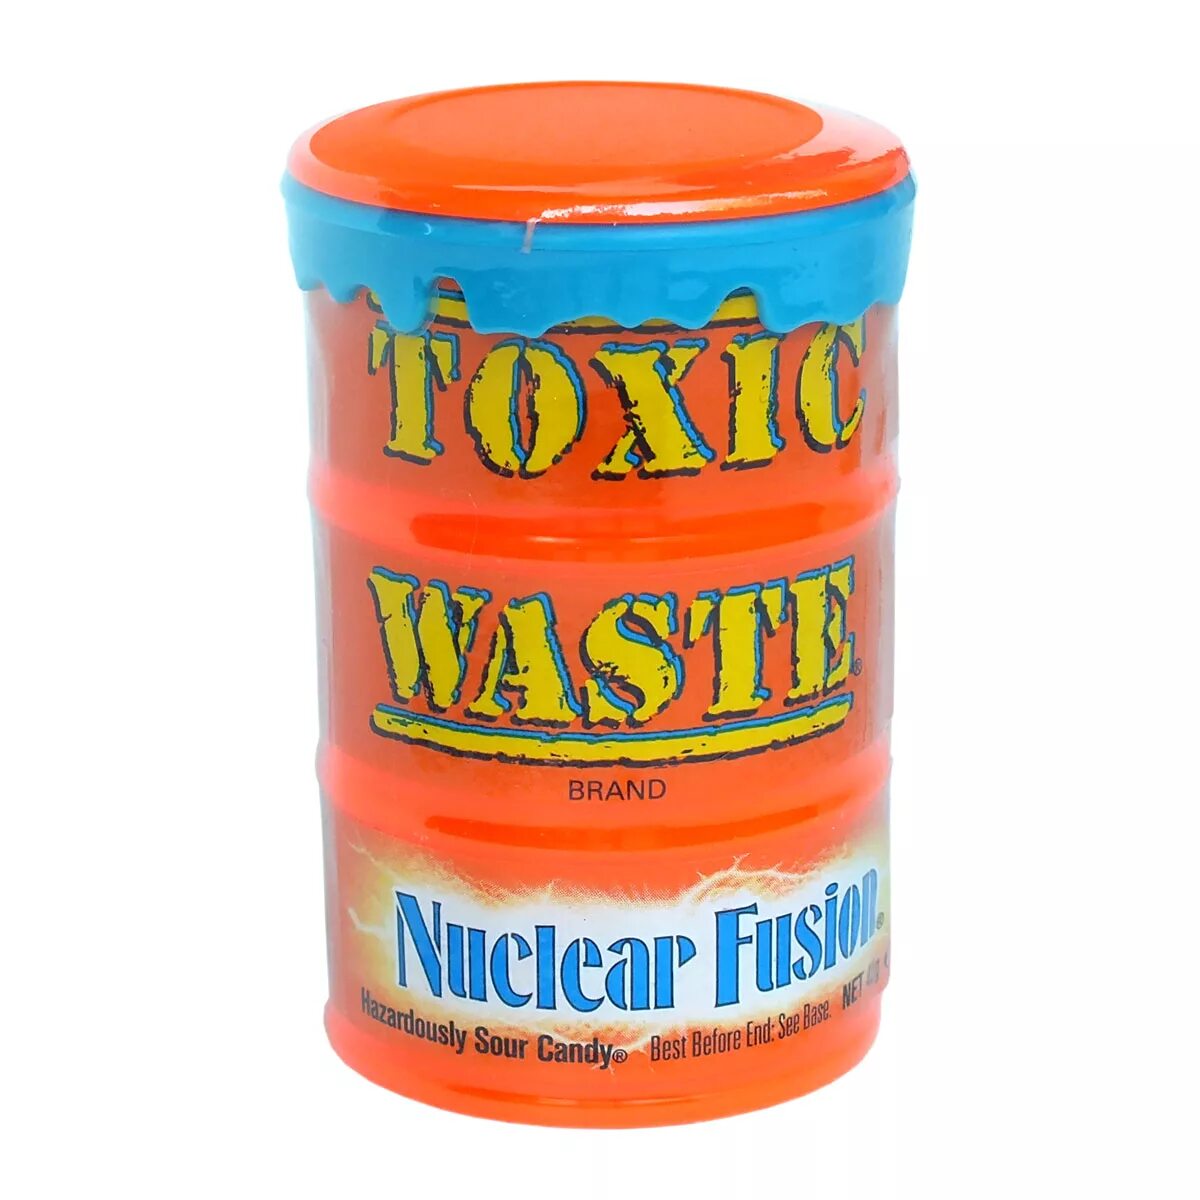 Самые кислые конфеты в мире Toxic waste. Toxic waste nuclear Fusion. Кислые конфеты Токсик. Леденцы Toxic waste. Сколько стоит токсик